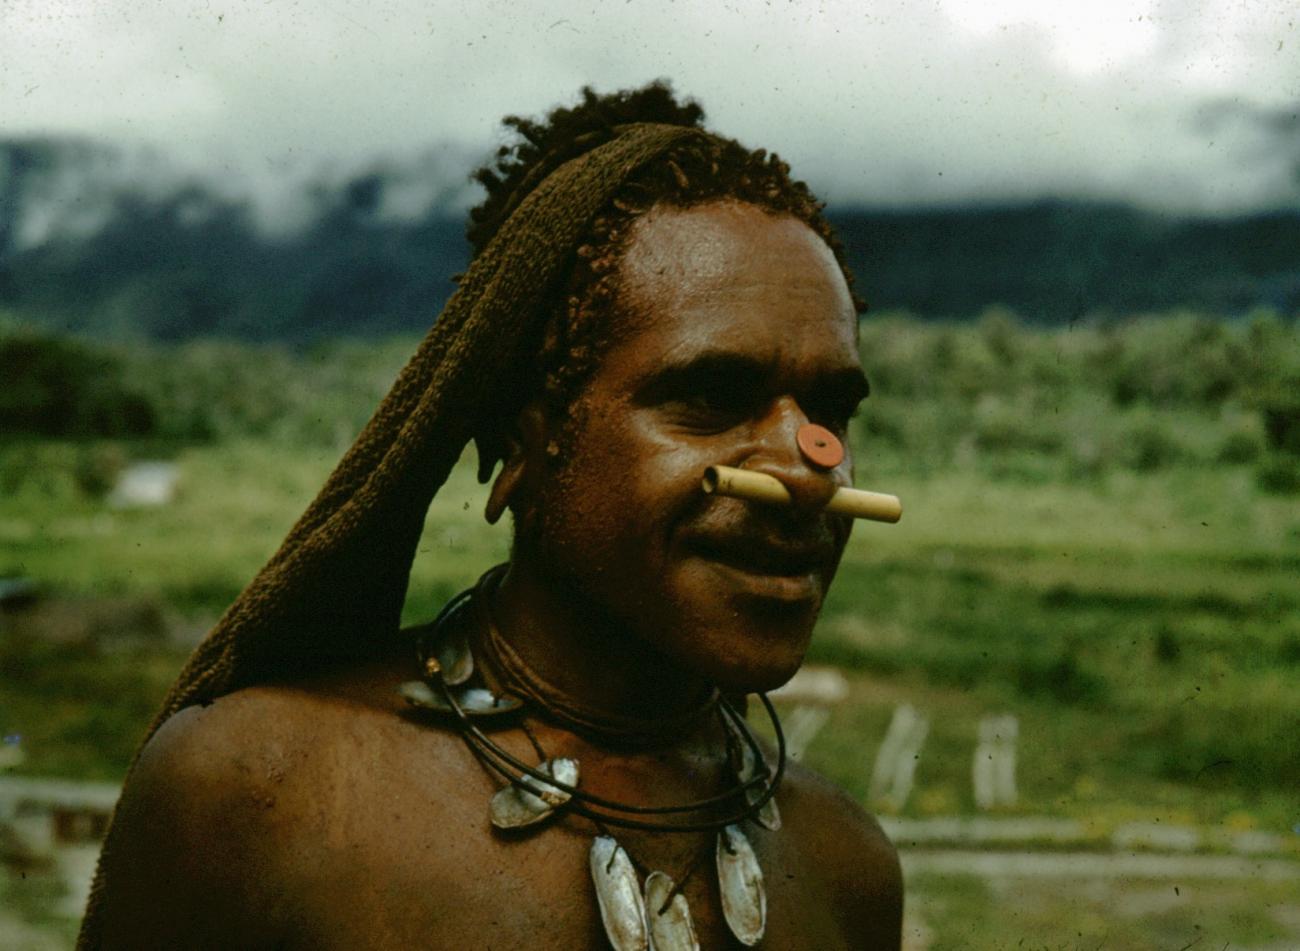 BD/66/91 - 
Portret van man met hals- en neusversiering
